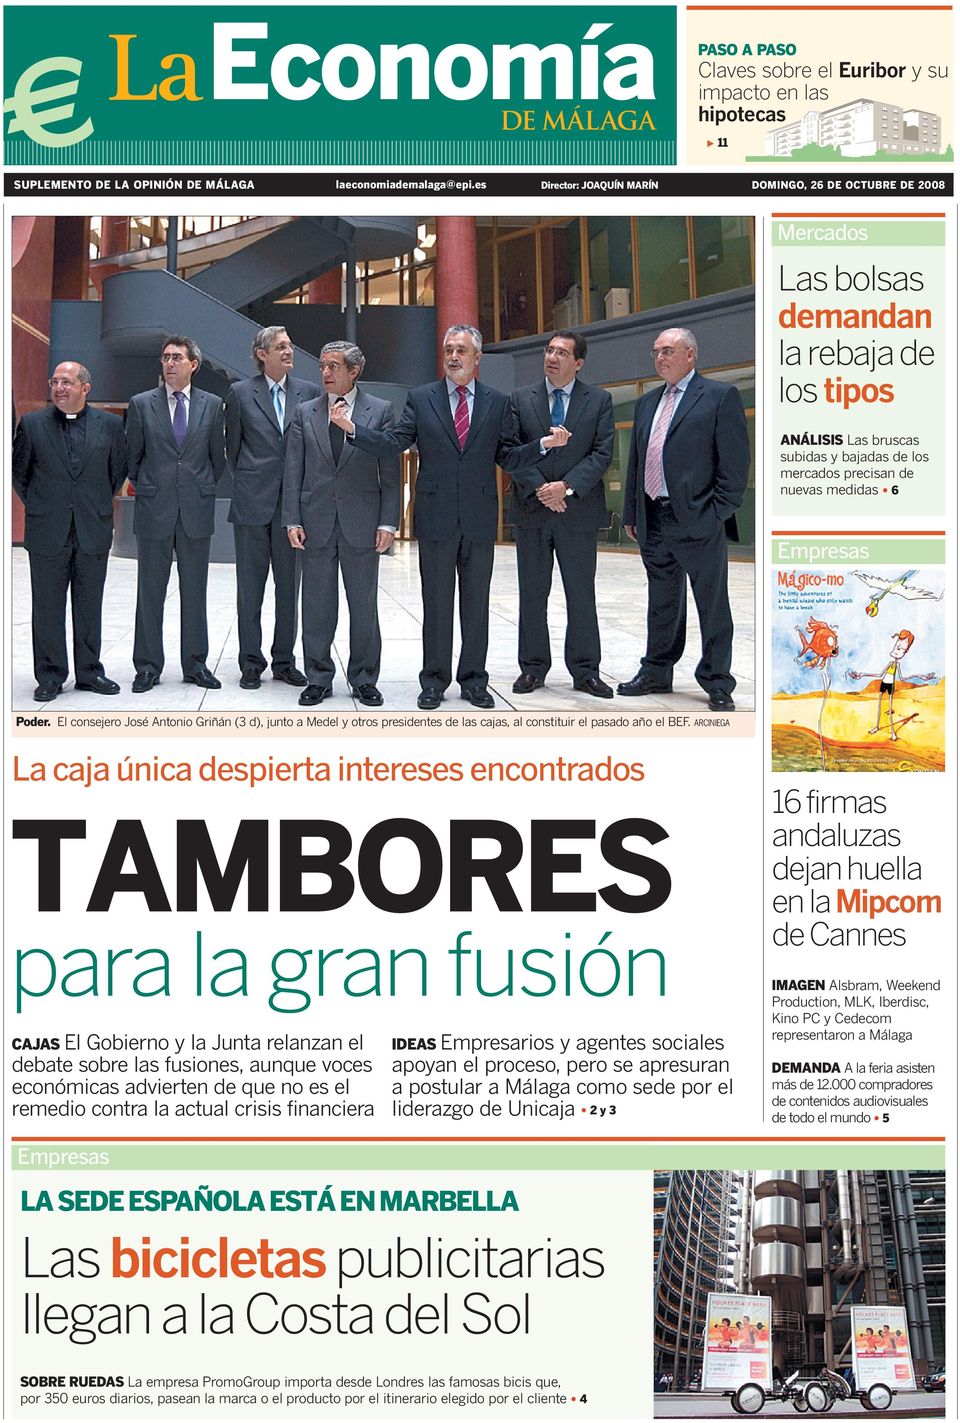 Empresas Poder. El consejero José Antonio Griñán (3 d), junto a Medel y otros presidentes de las cajas, al constituir el pasado año el BEF.